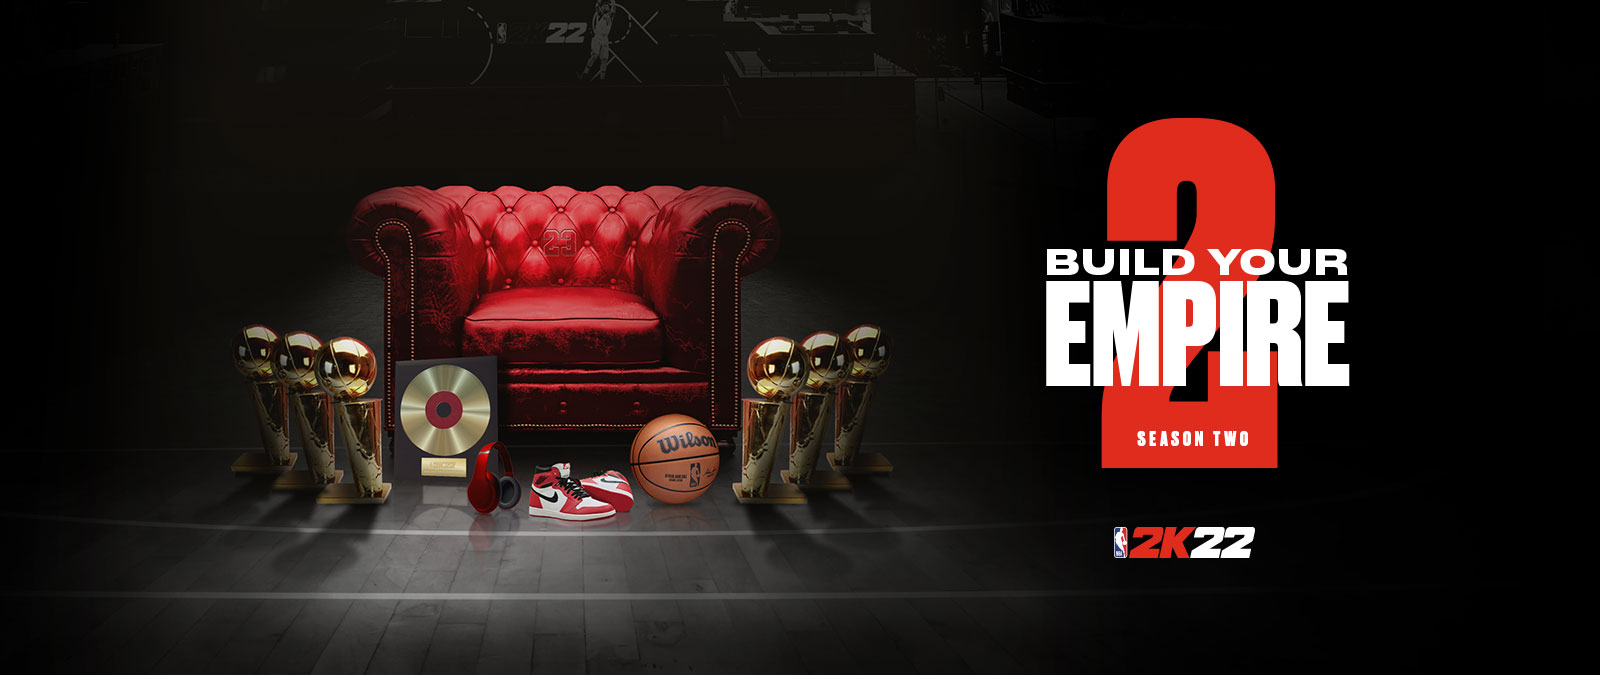 Vybudujte si impérium v Season 2 hry NBA 2k22: niekoľko trofejí okolo červeného koženého kresla.